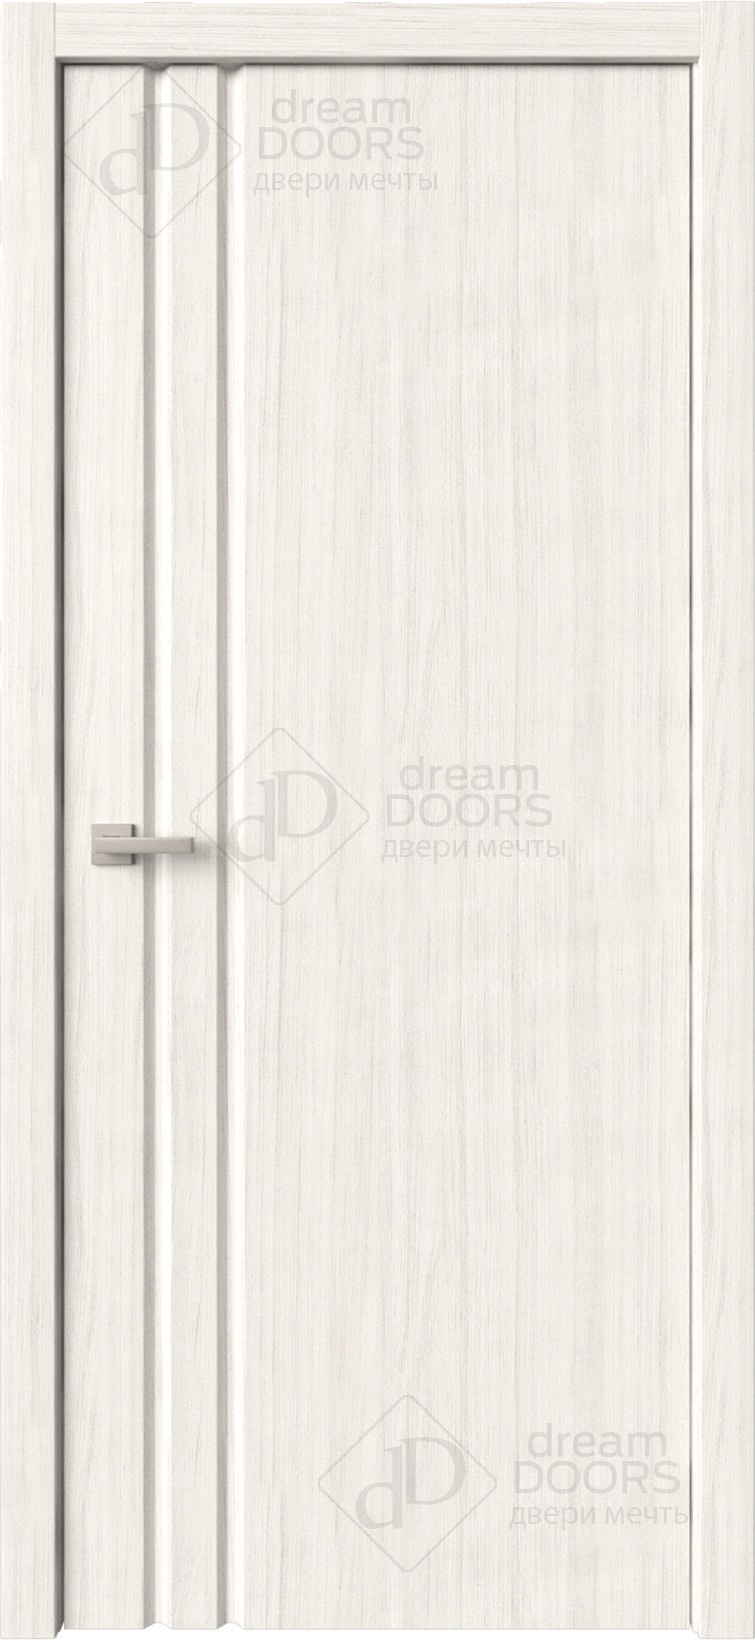 Dream Doors Межкомнатная дверь Стиль 1 узкое ПГ, арт. 6269 - фото №12